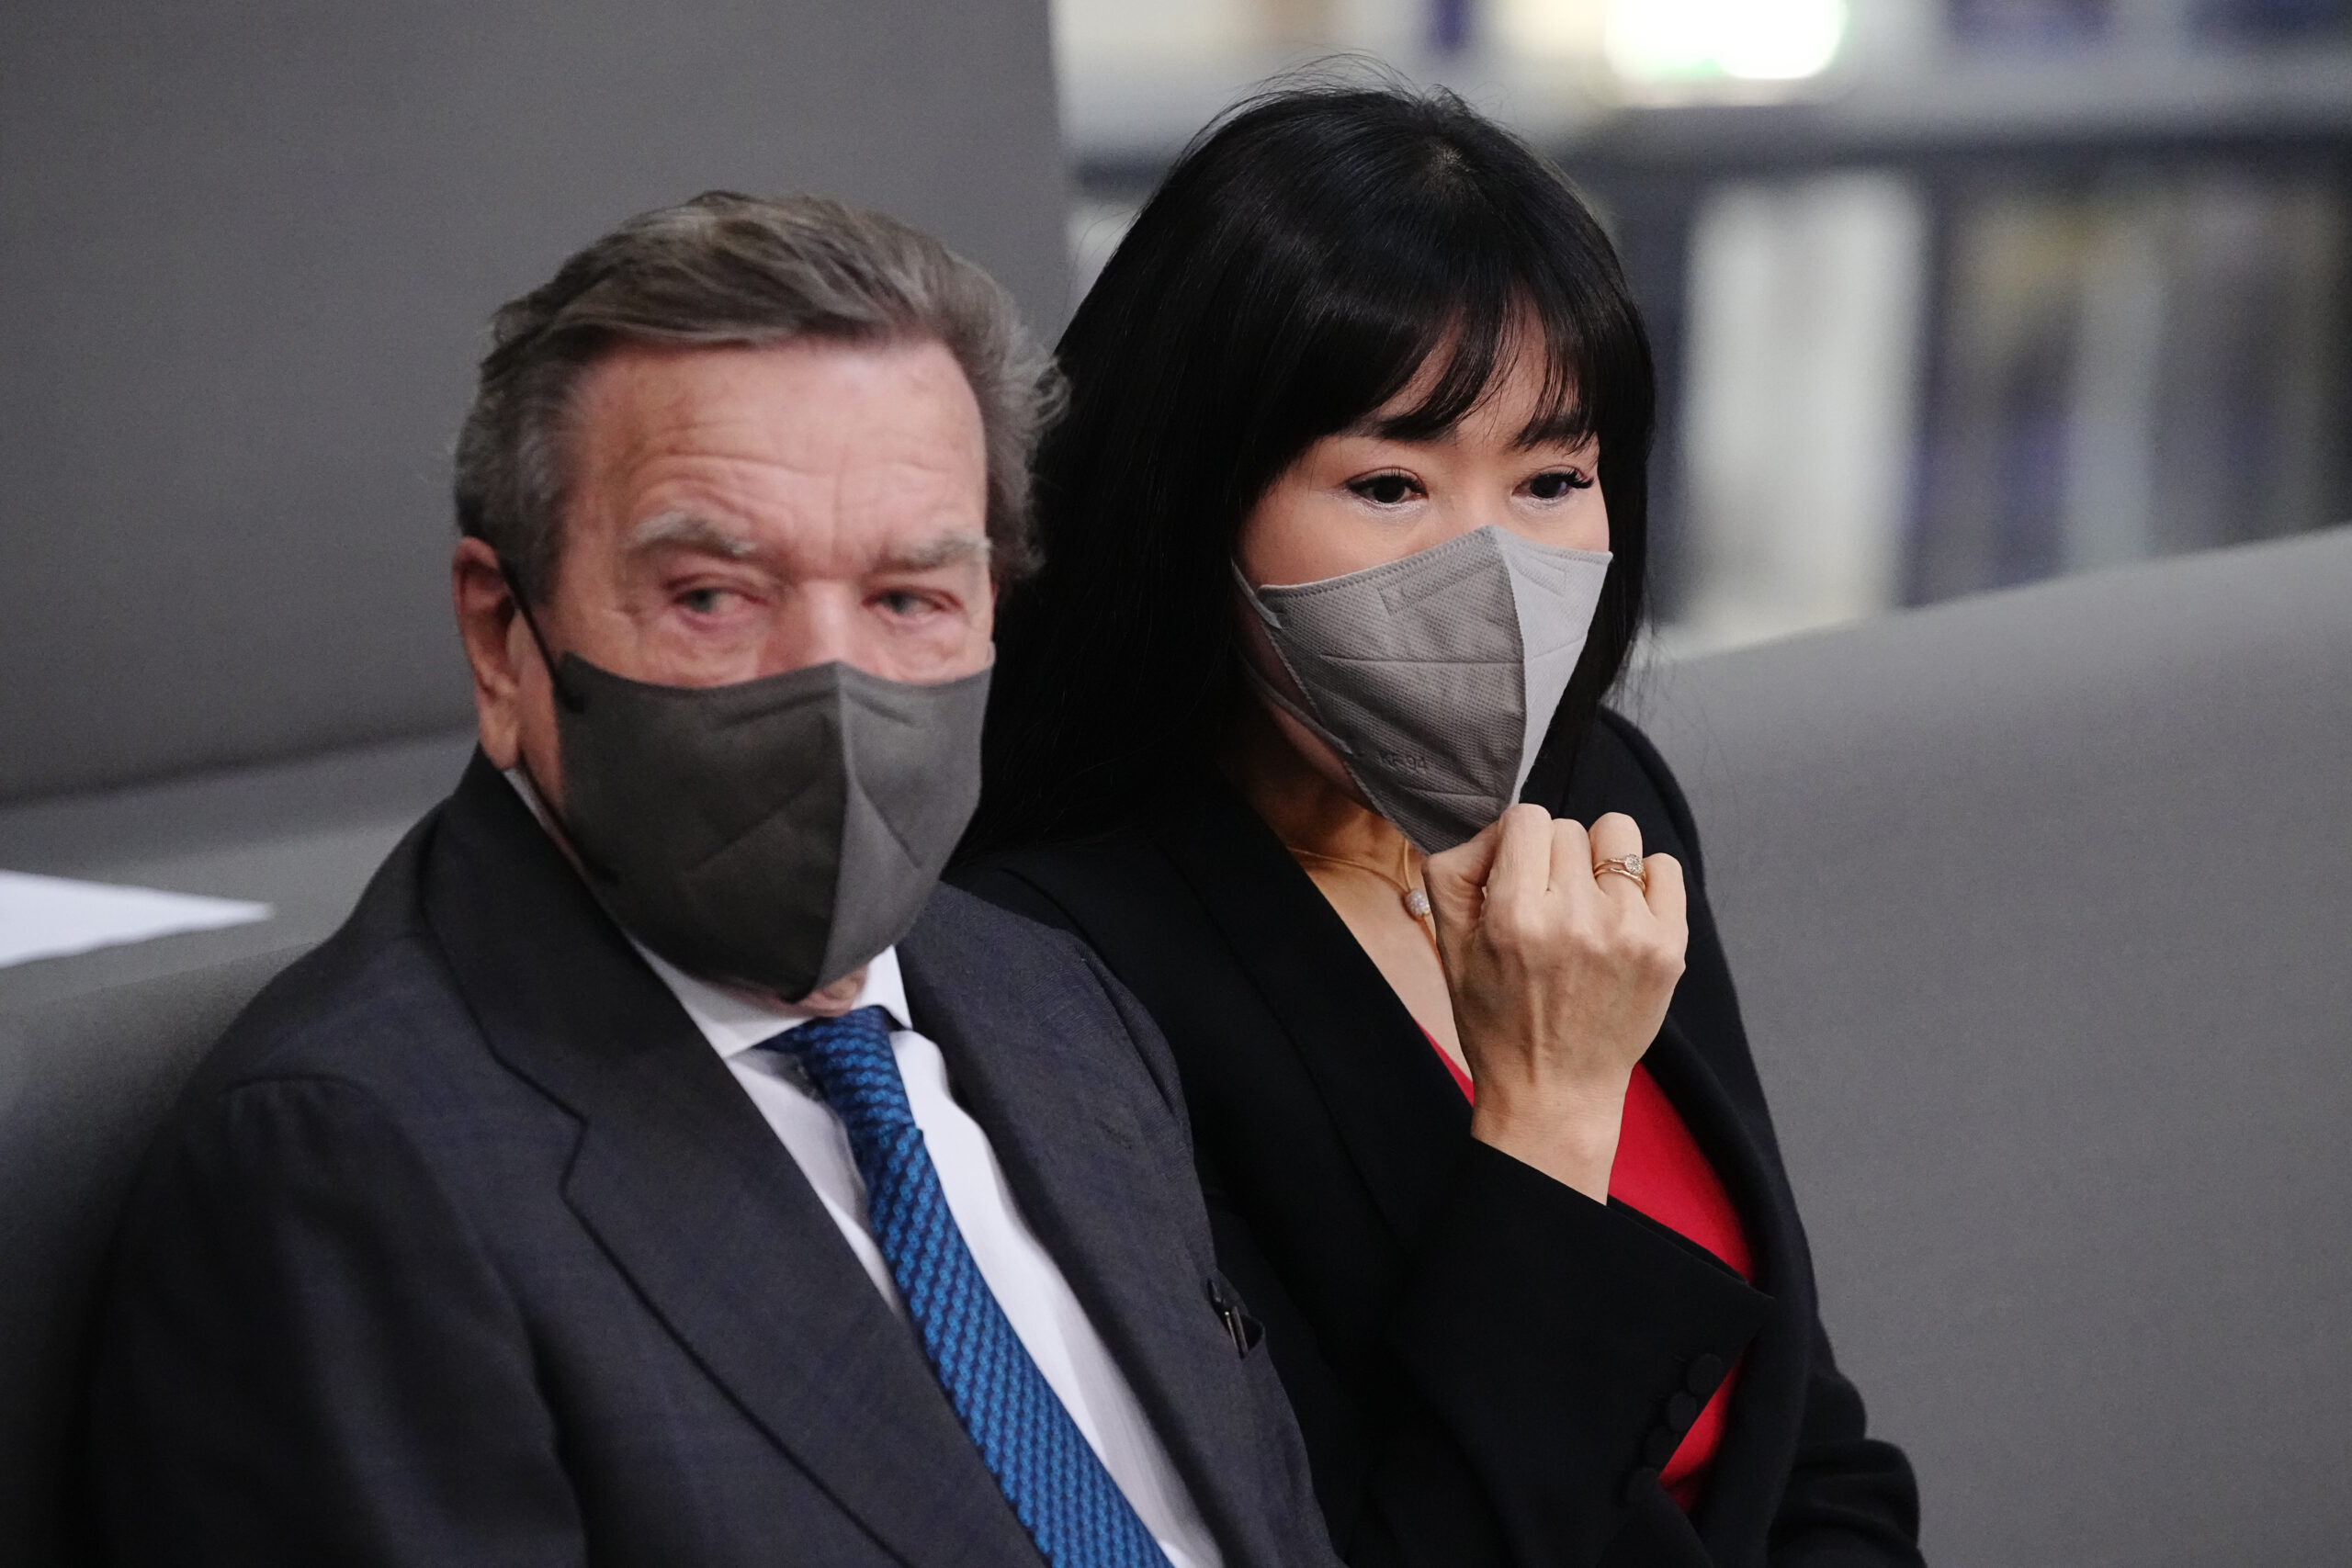 Gerhard Schröder und seine Frau Soyeon Schröder-Kim sind nach Moskau gereist, um mit Putin zu sprechen. Die Umstände sind mysteriös.